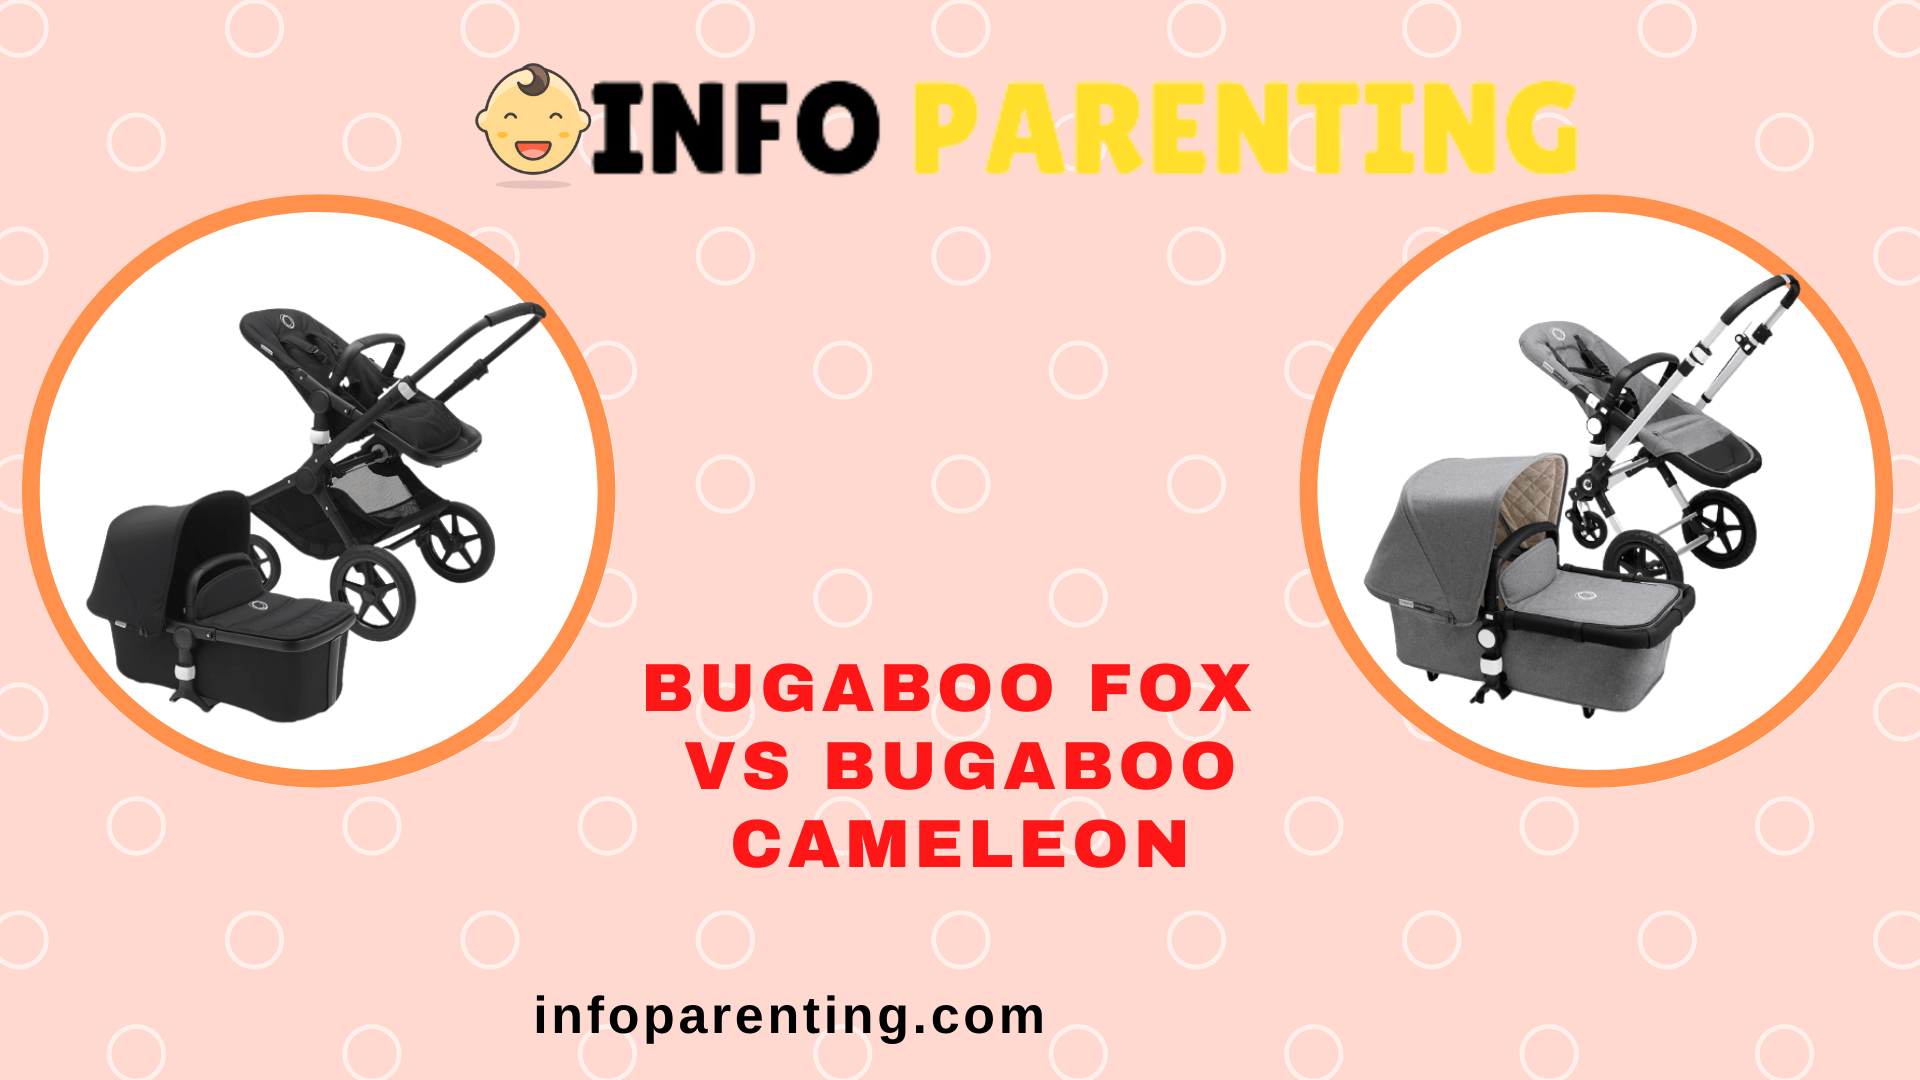 Bugaboo Fox vs Cameleon - infoparenting